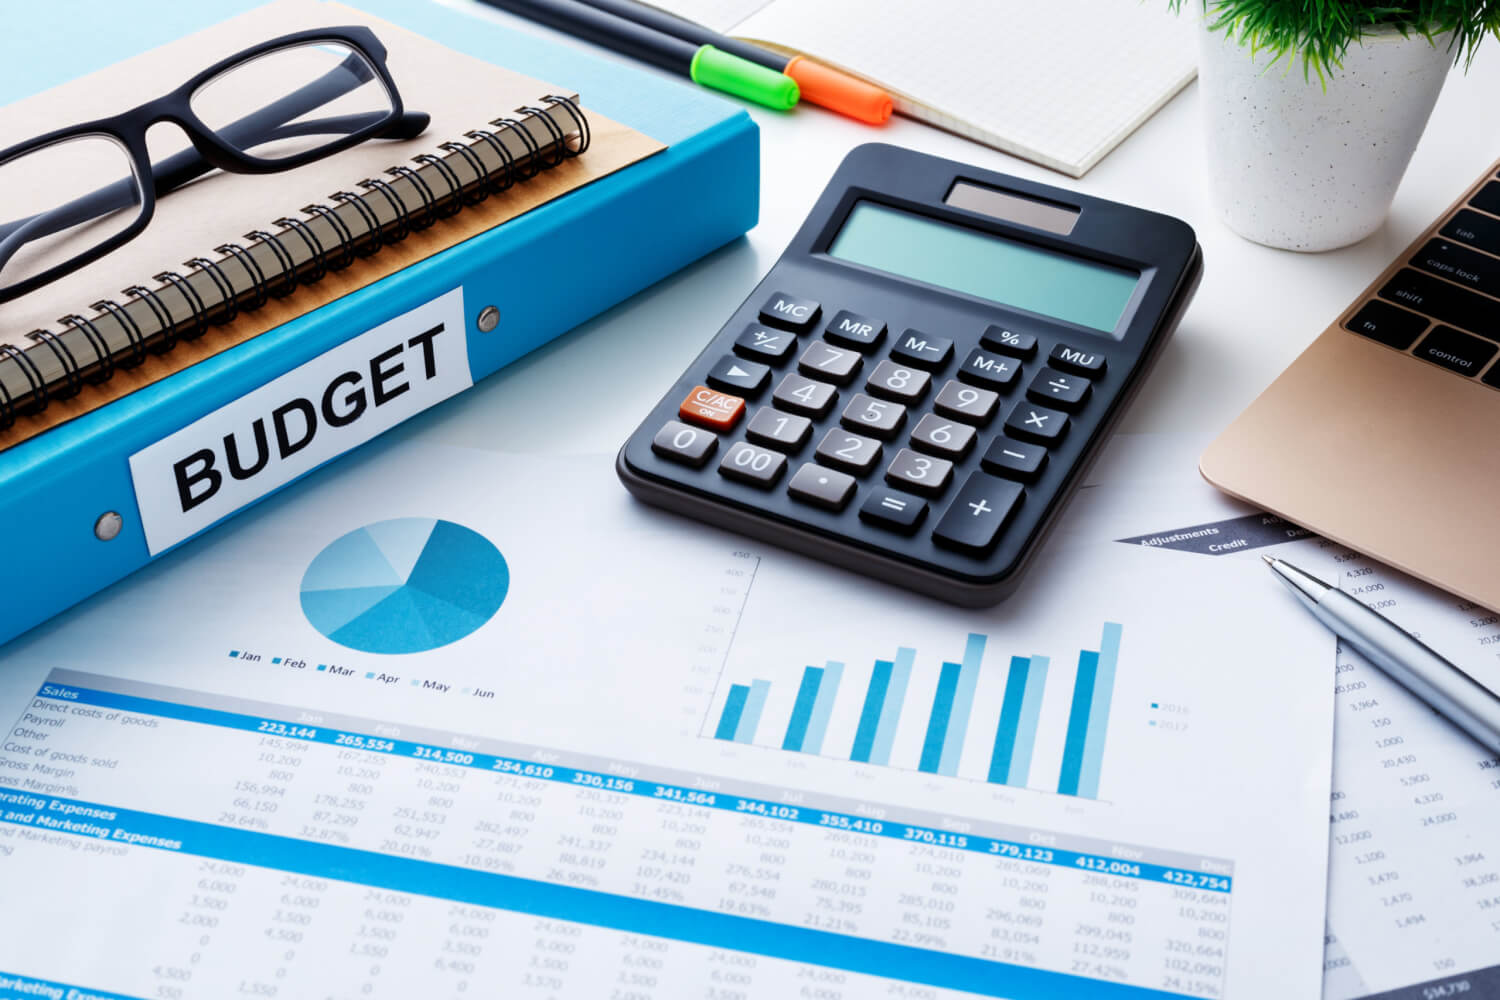 بودجه بندی در کنکور 1403 و نحوه ی برنامه ریزی دقیق برای آن